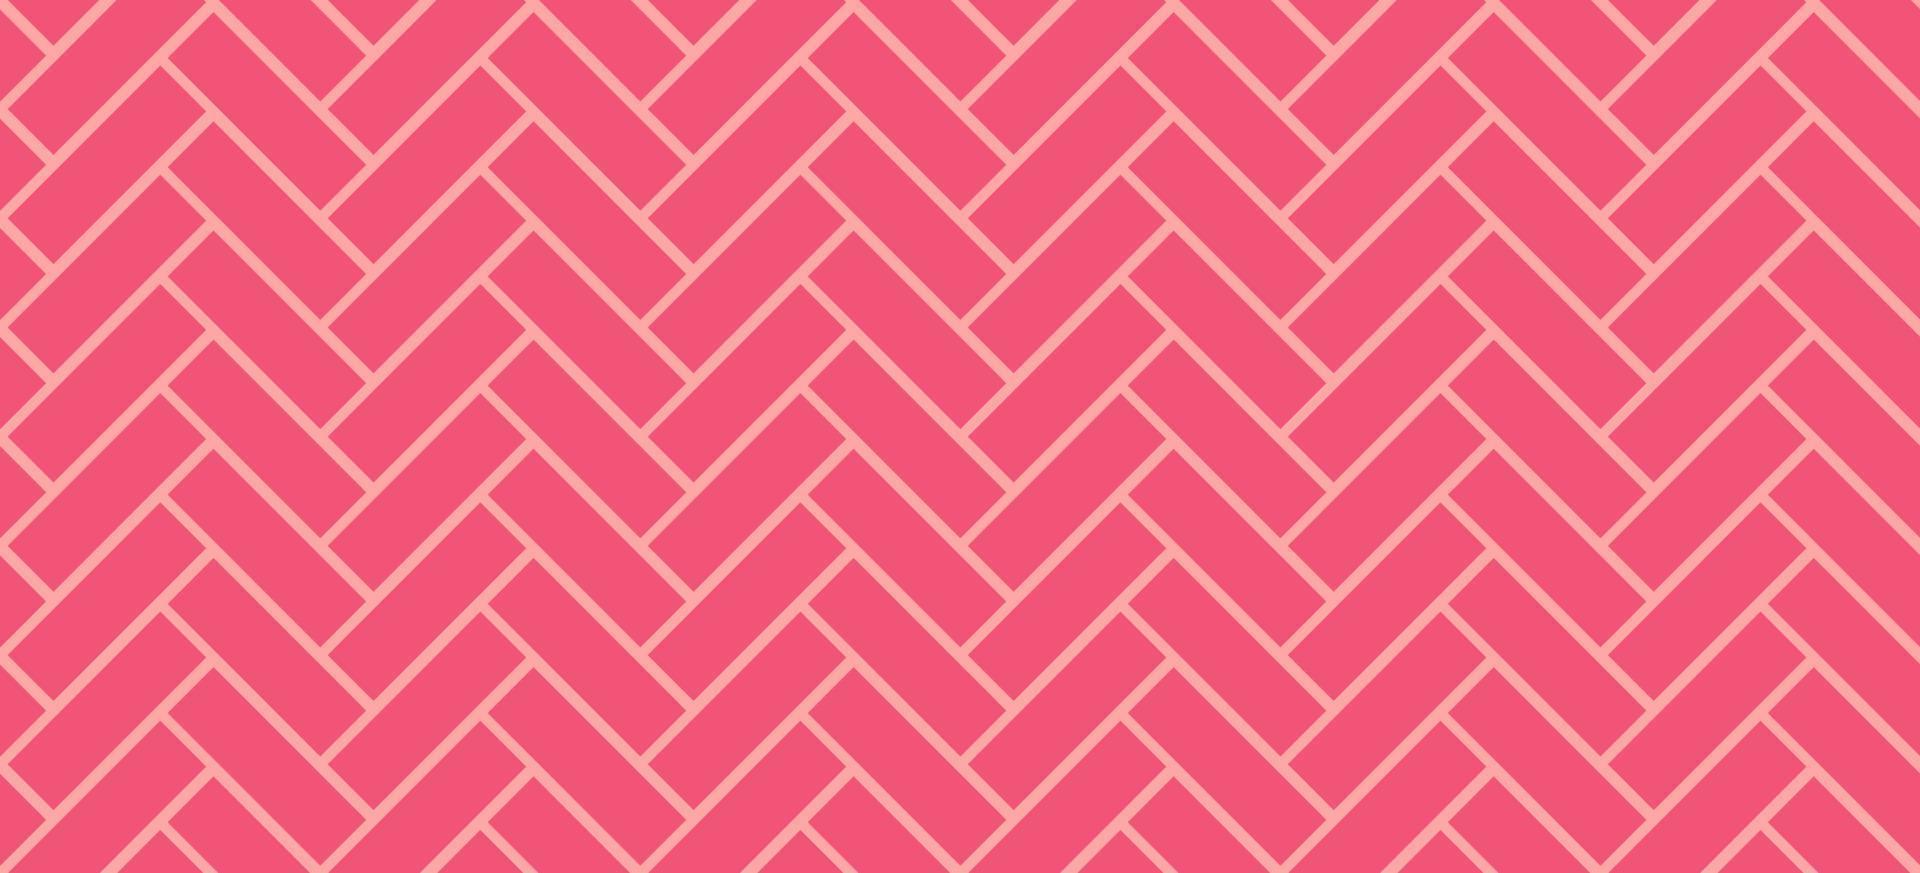 fiskbens kakelmönster. diagonal rosa keramiska tegelbakgrund. vektor sömlös illustration.